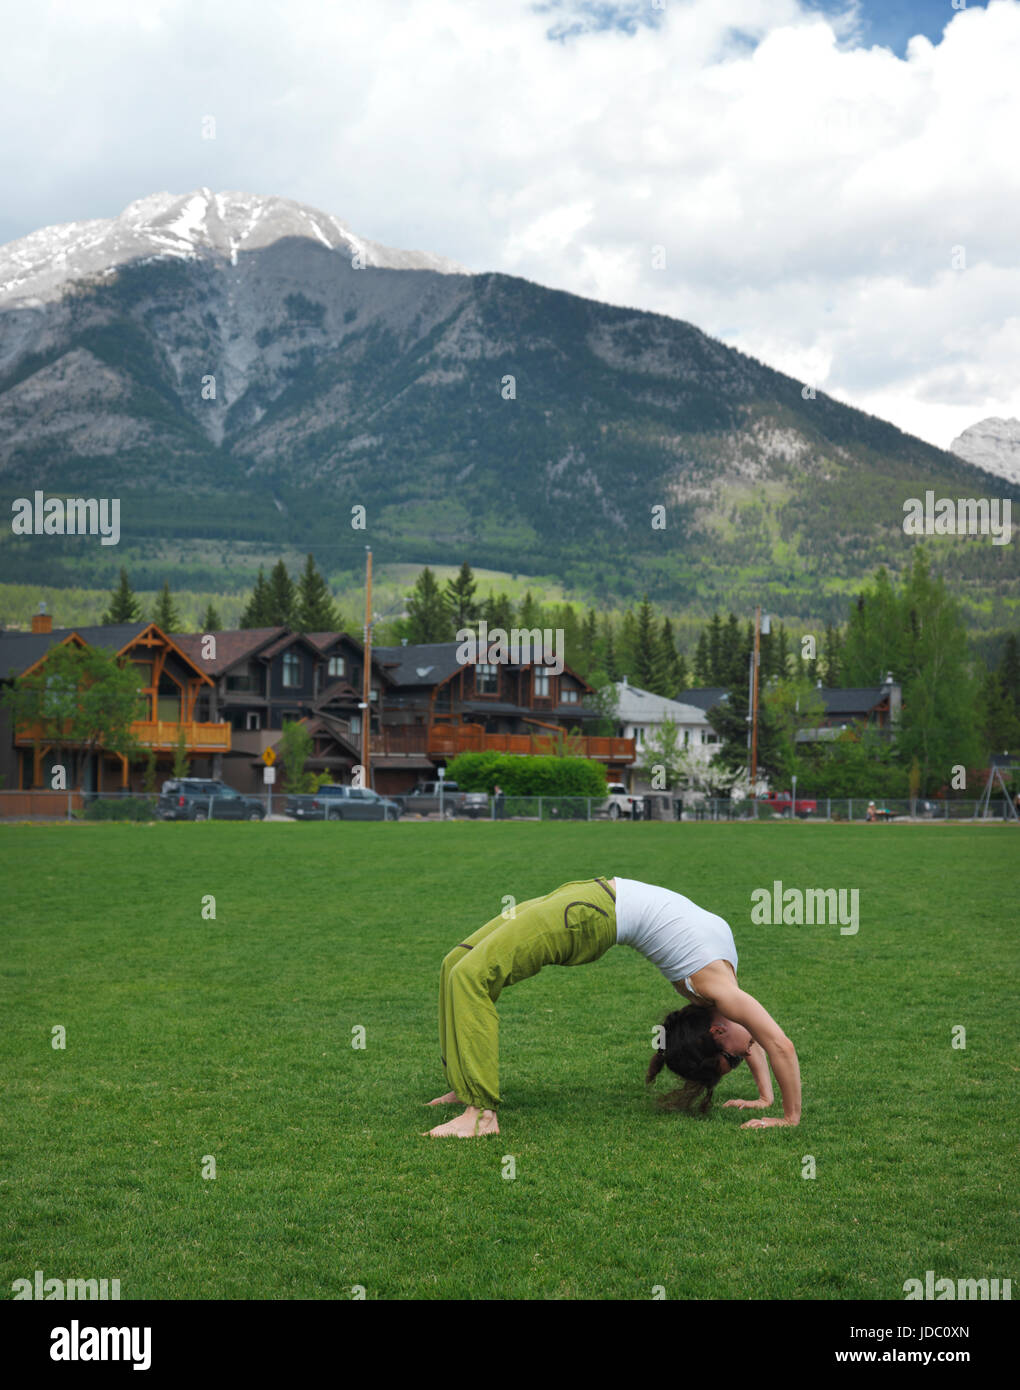 Jeune femme pratiquant le yoga, faire de l'exercice à l'extérieur du pont dans le parc du Centenaire à Canmore, ville de l'Alberta les montagnes Rocheuses canadiennes avec des montagnes Rocheuses dans le backg Banque D'Images